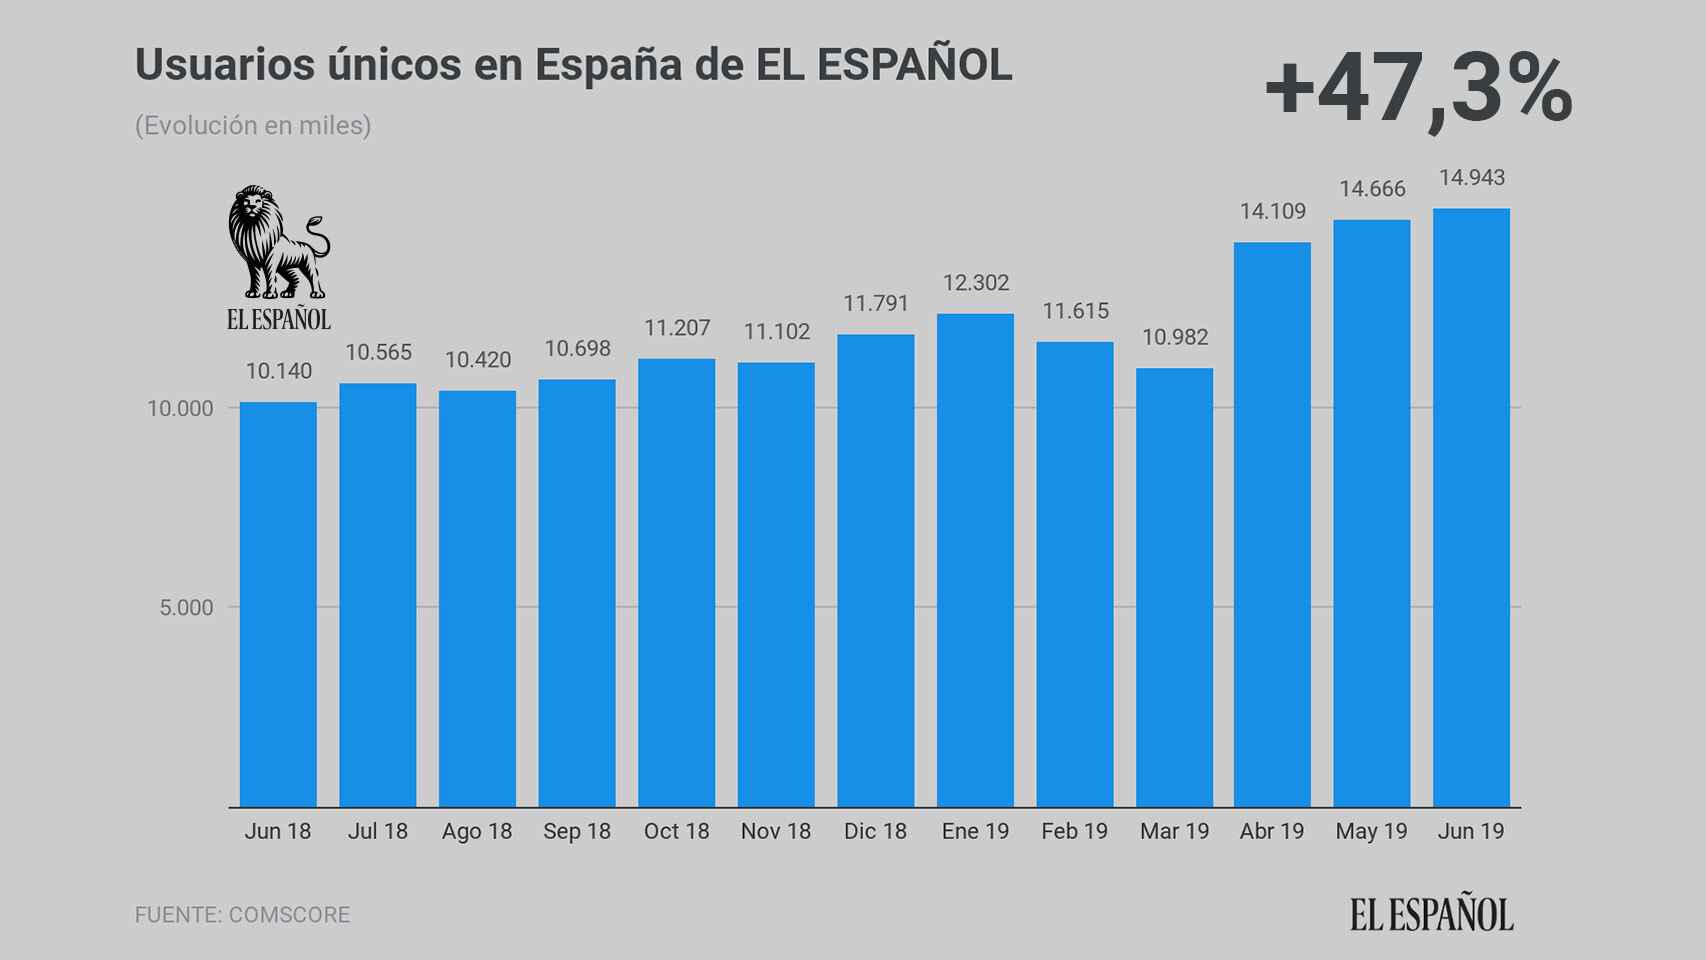 Usuarios únicos en España de EL ESPAÑOL durante el mes de junio, según Comscore.